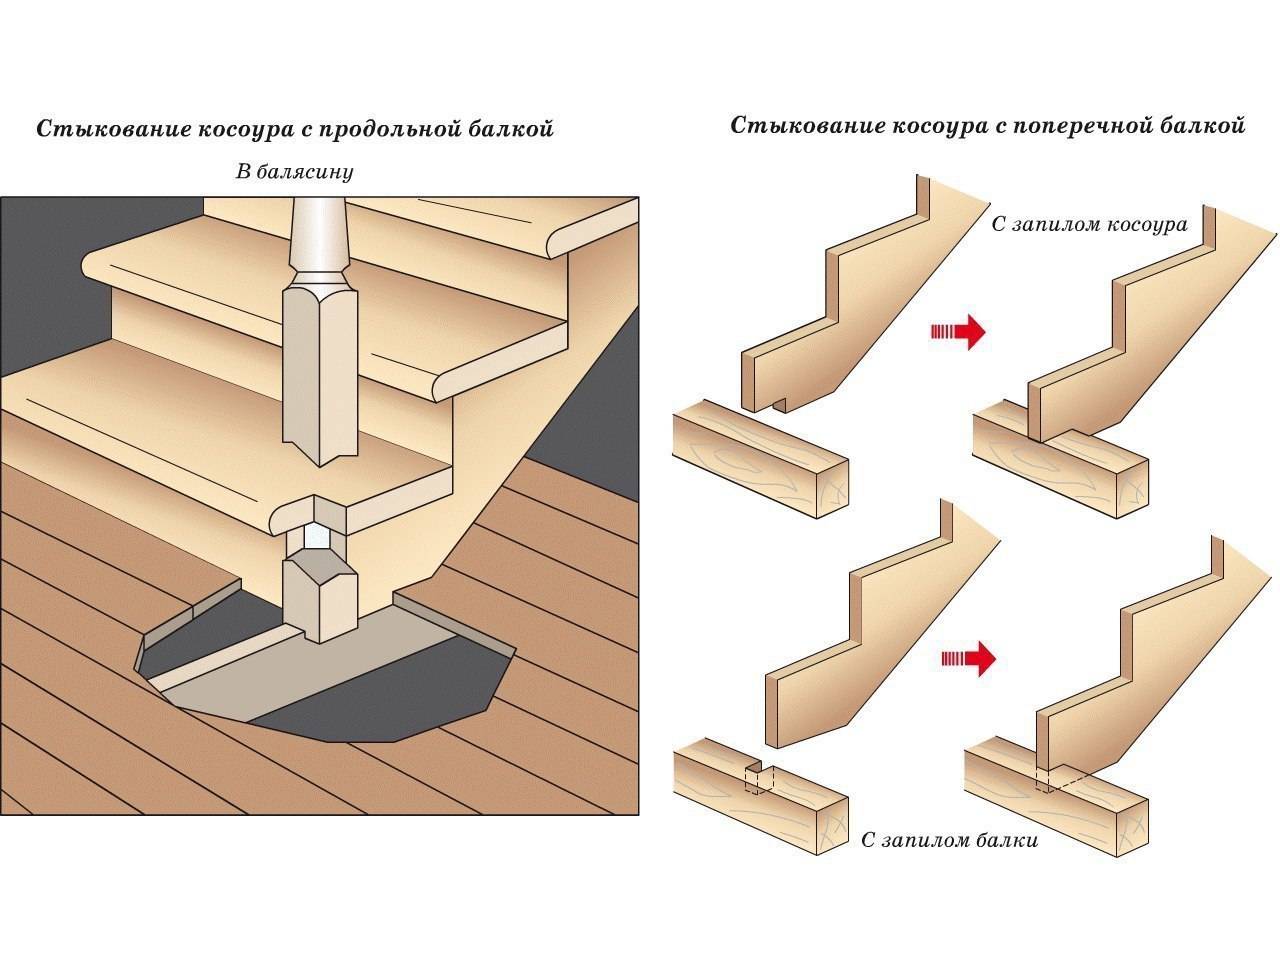 Как разметить тетиву деревянной лестницы под ступени. как осуществить крепление косоуров к элементам лестницы